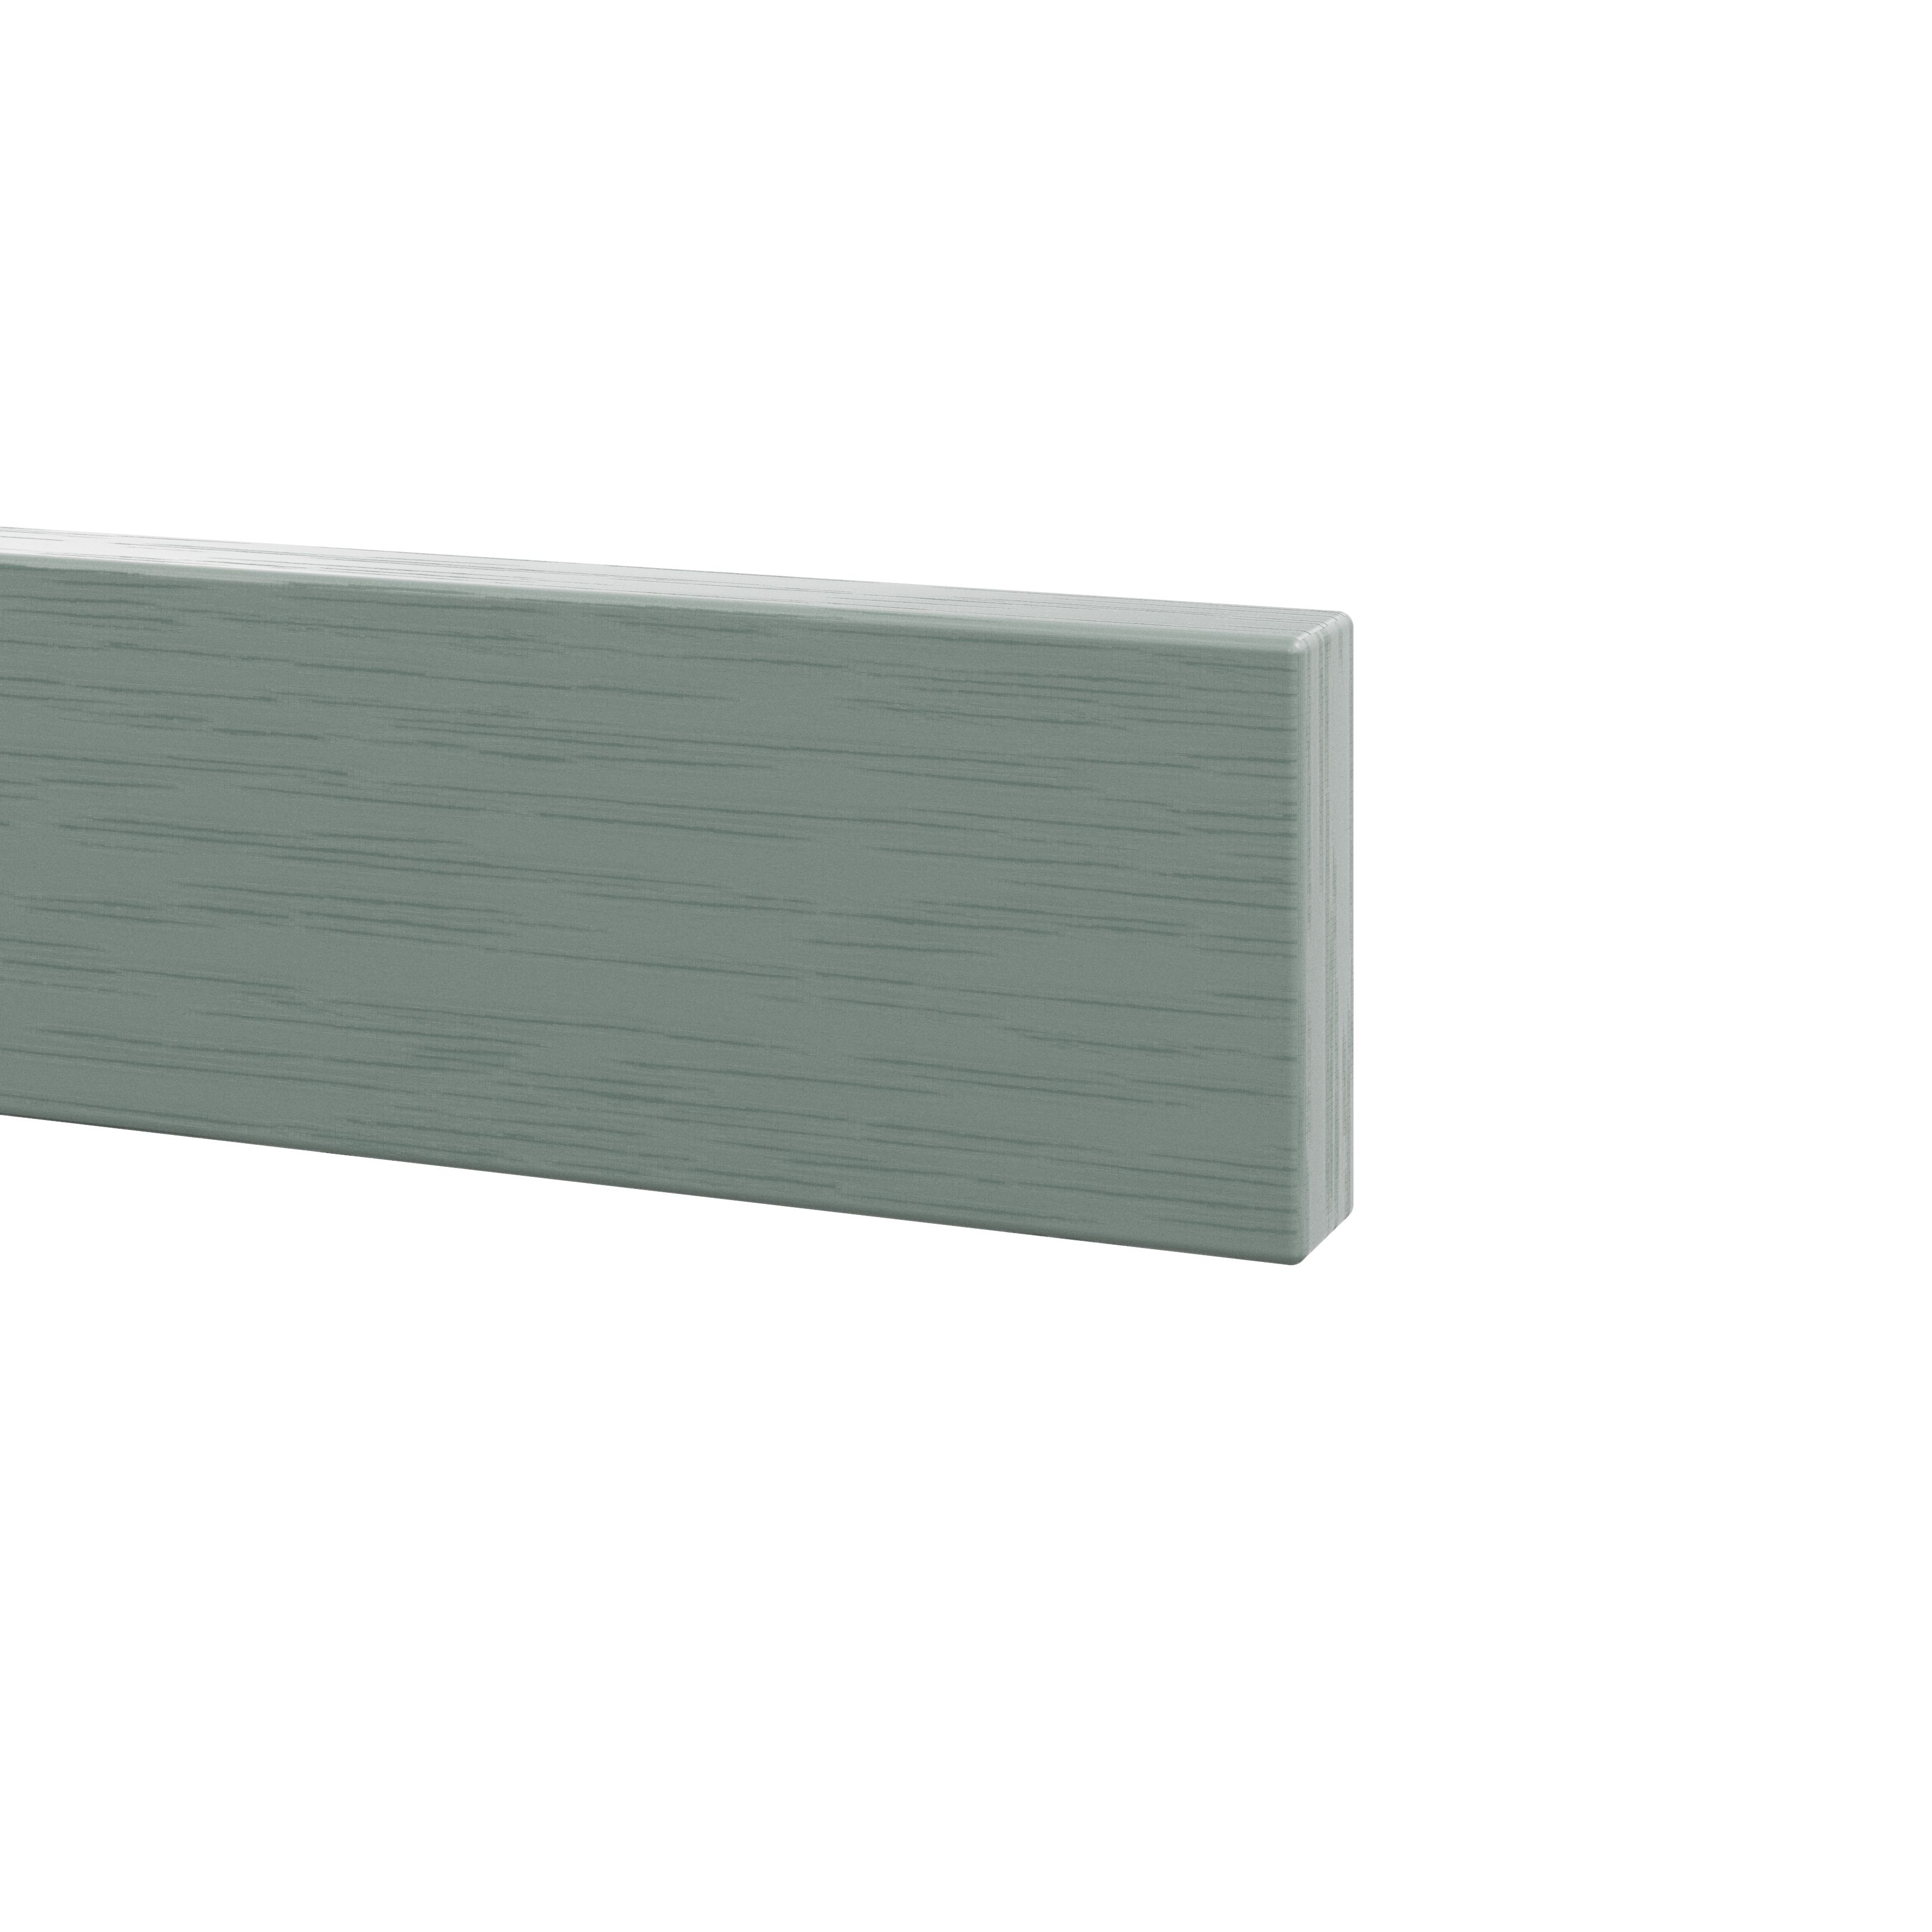 GoodHome Alpinia Matt Green Painted Wood Effect Shaker Standard Appliance Filler panel (H)58mm (W)597mm